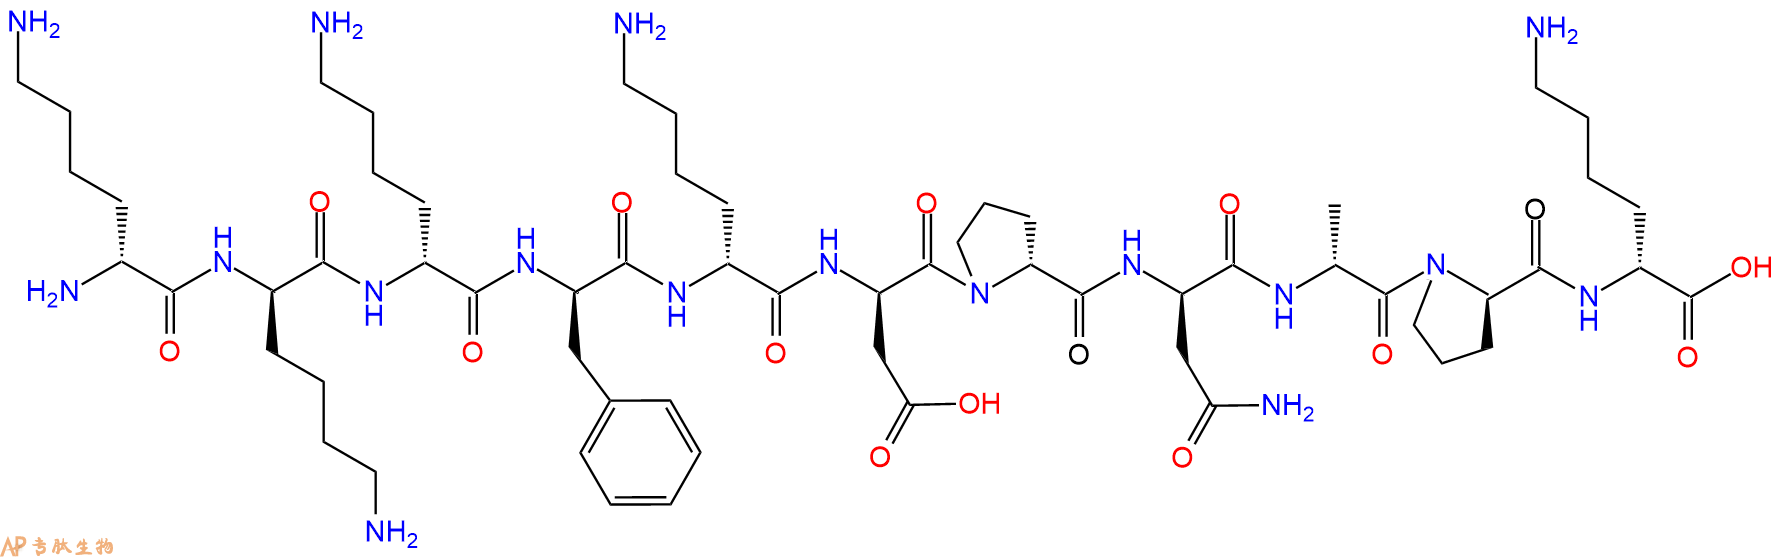 专肽生物产品H2N-DLys-DLys-DLys-DPhe-DLys-DAsp-DPro-DAsn-DAla-D